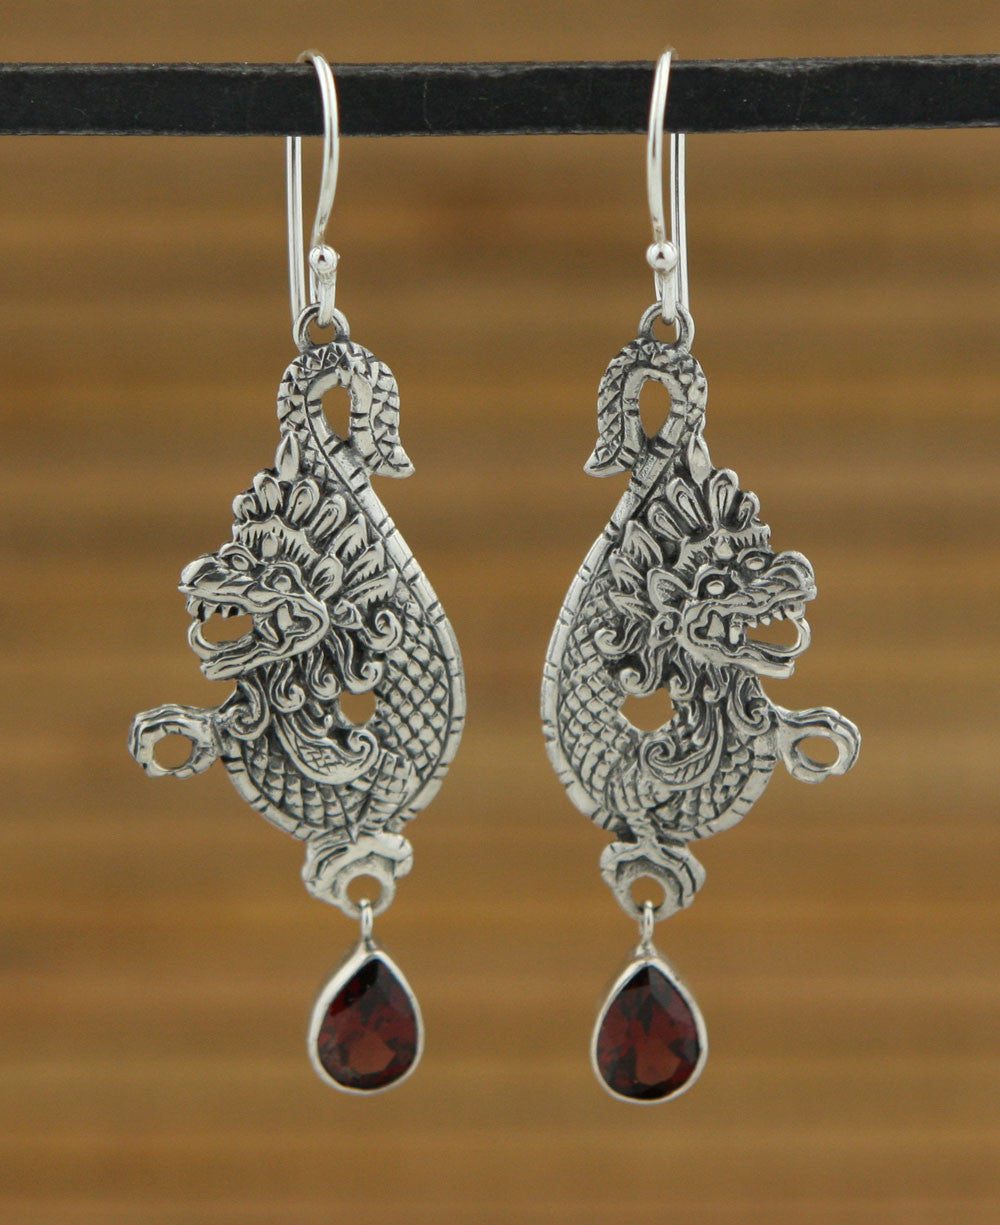 Garnet Dragon Earrings